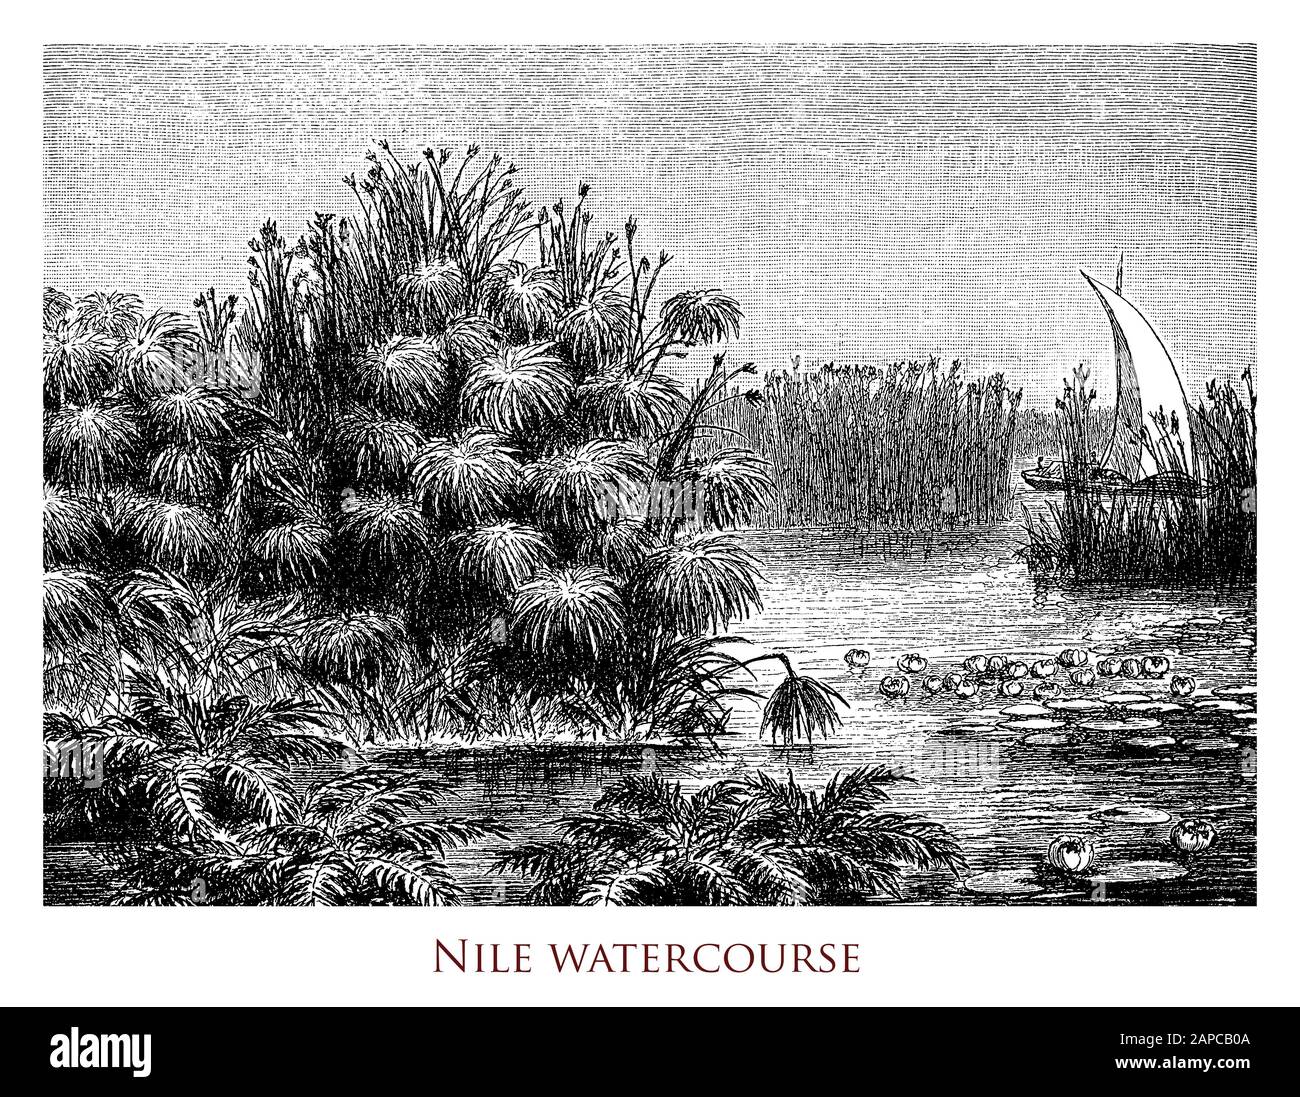 Le paysage idyllique du cours d'eau du Nil, la plus longue rivière au monde située en Afrique centrale-est, canal de navigation naturelle avec de larges ramifications Banque D'Images